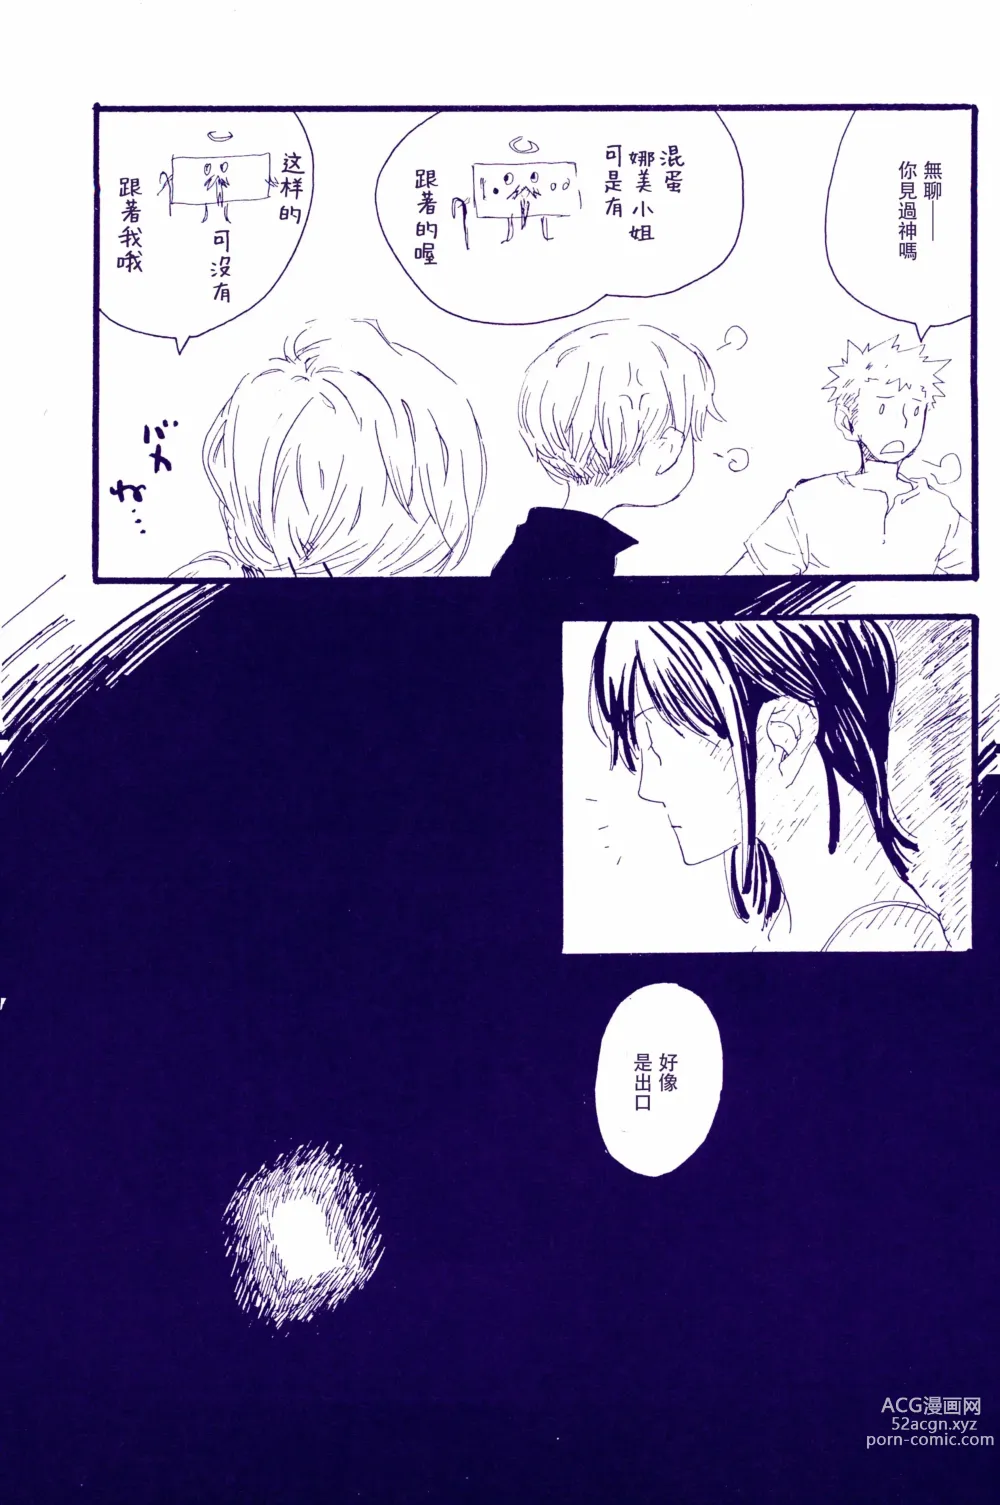 Page 24 of doujinshi 神明存在吗?神明不存在吗?